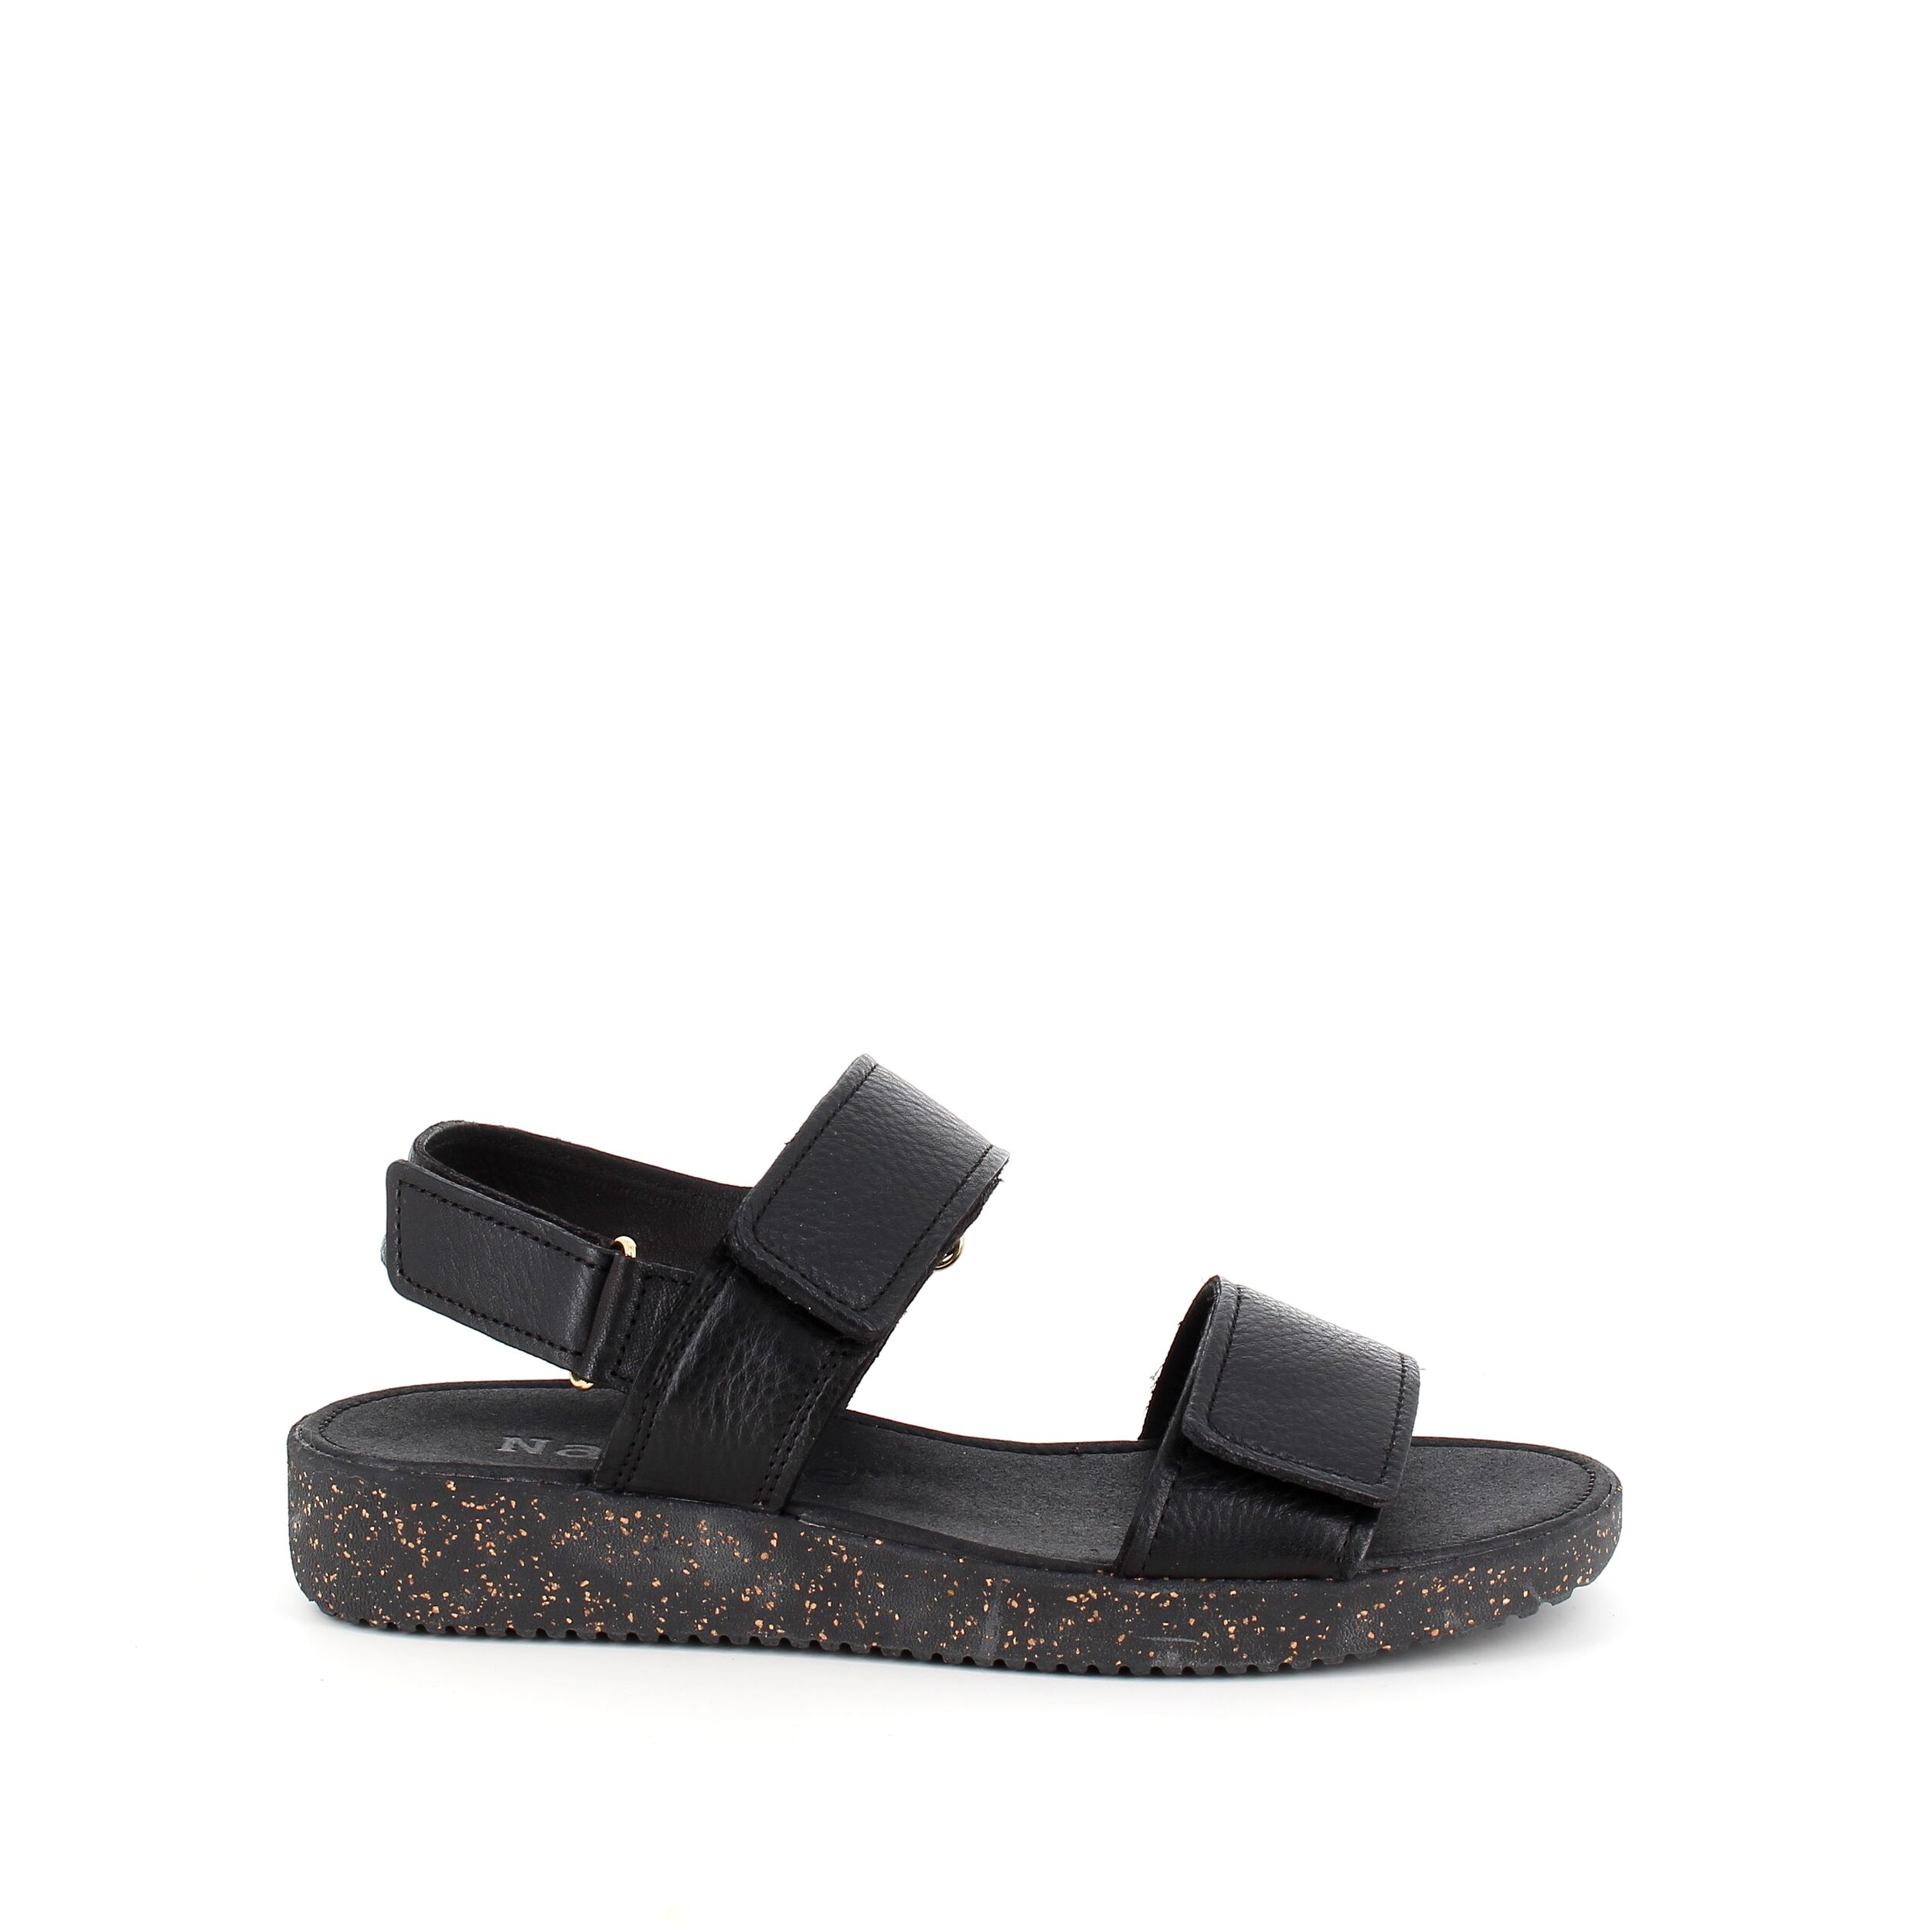 Se Nature sandal i sort skind med sorte såler - 39 hos Sygeplejebutikken.dk